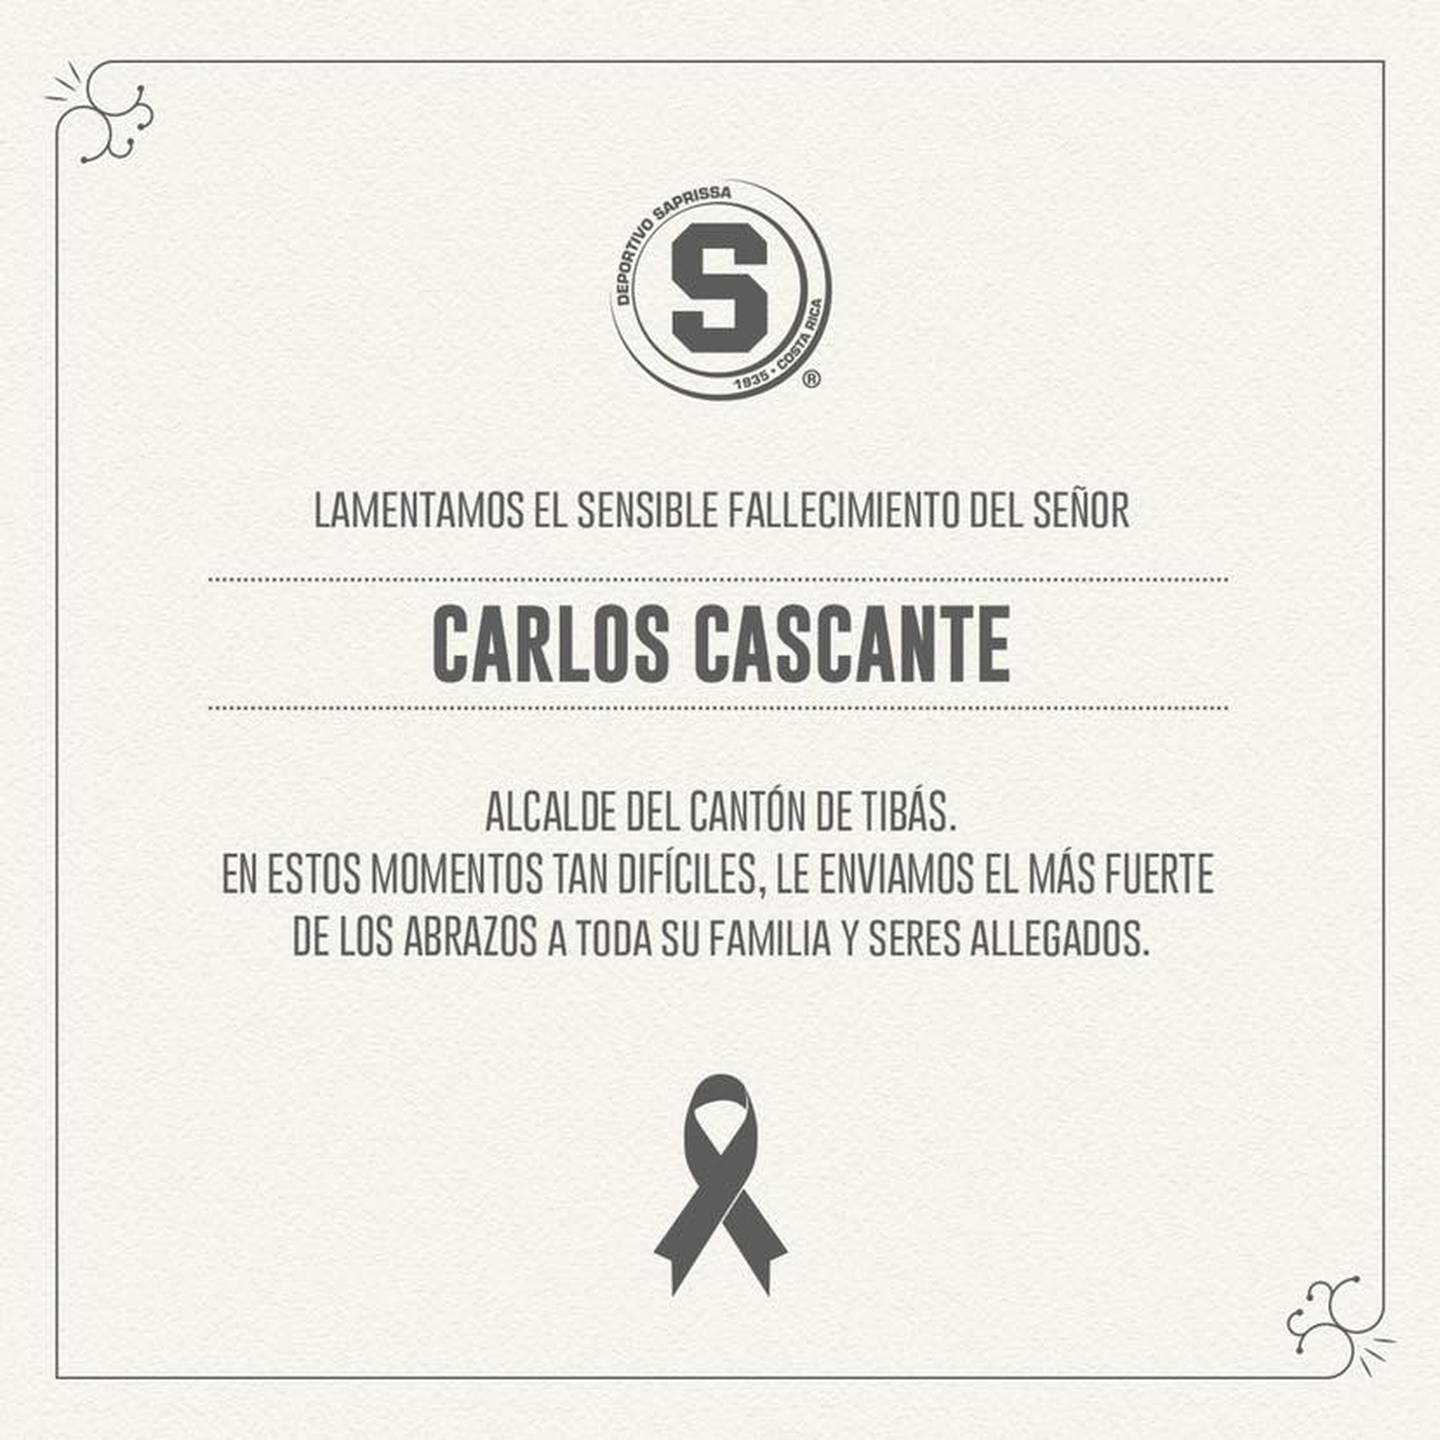 El Deportivo Saprissa lamentó, este 16 de mayo del 2021, la muerte del alcalde de Tibás, Carlos Cascante Duarte